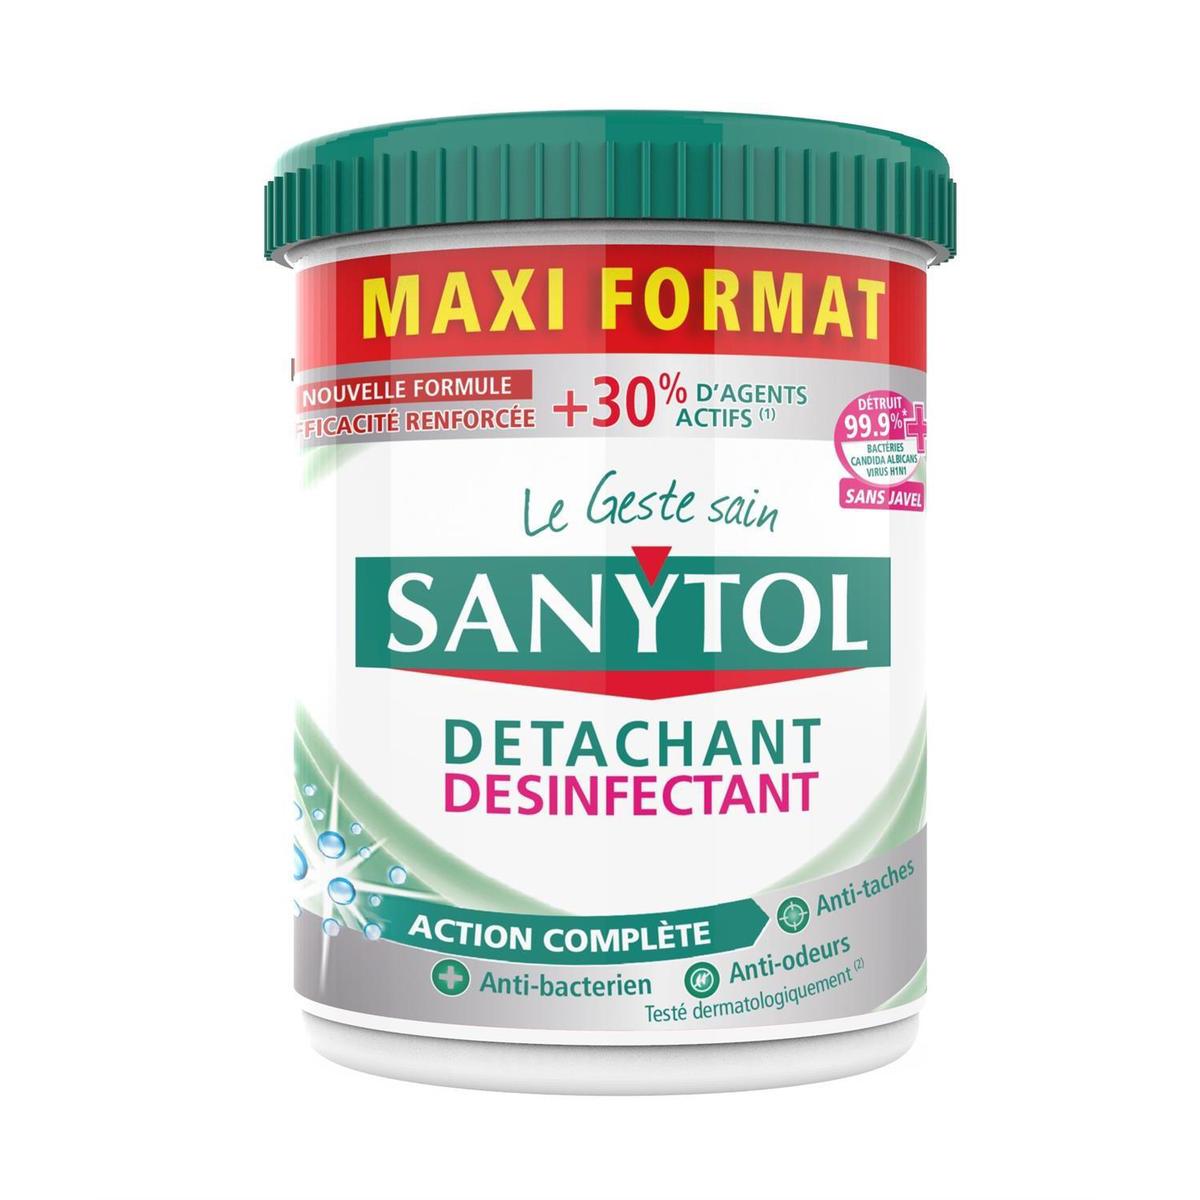 Acheter Sanytol Poudre détachante désinfectante Maxi format, 900 Gr